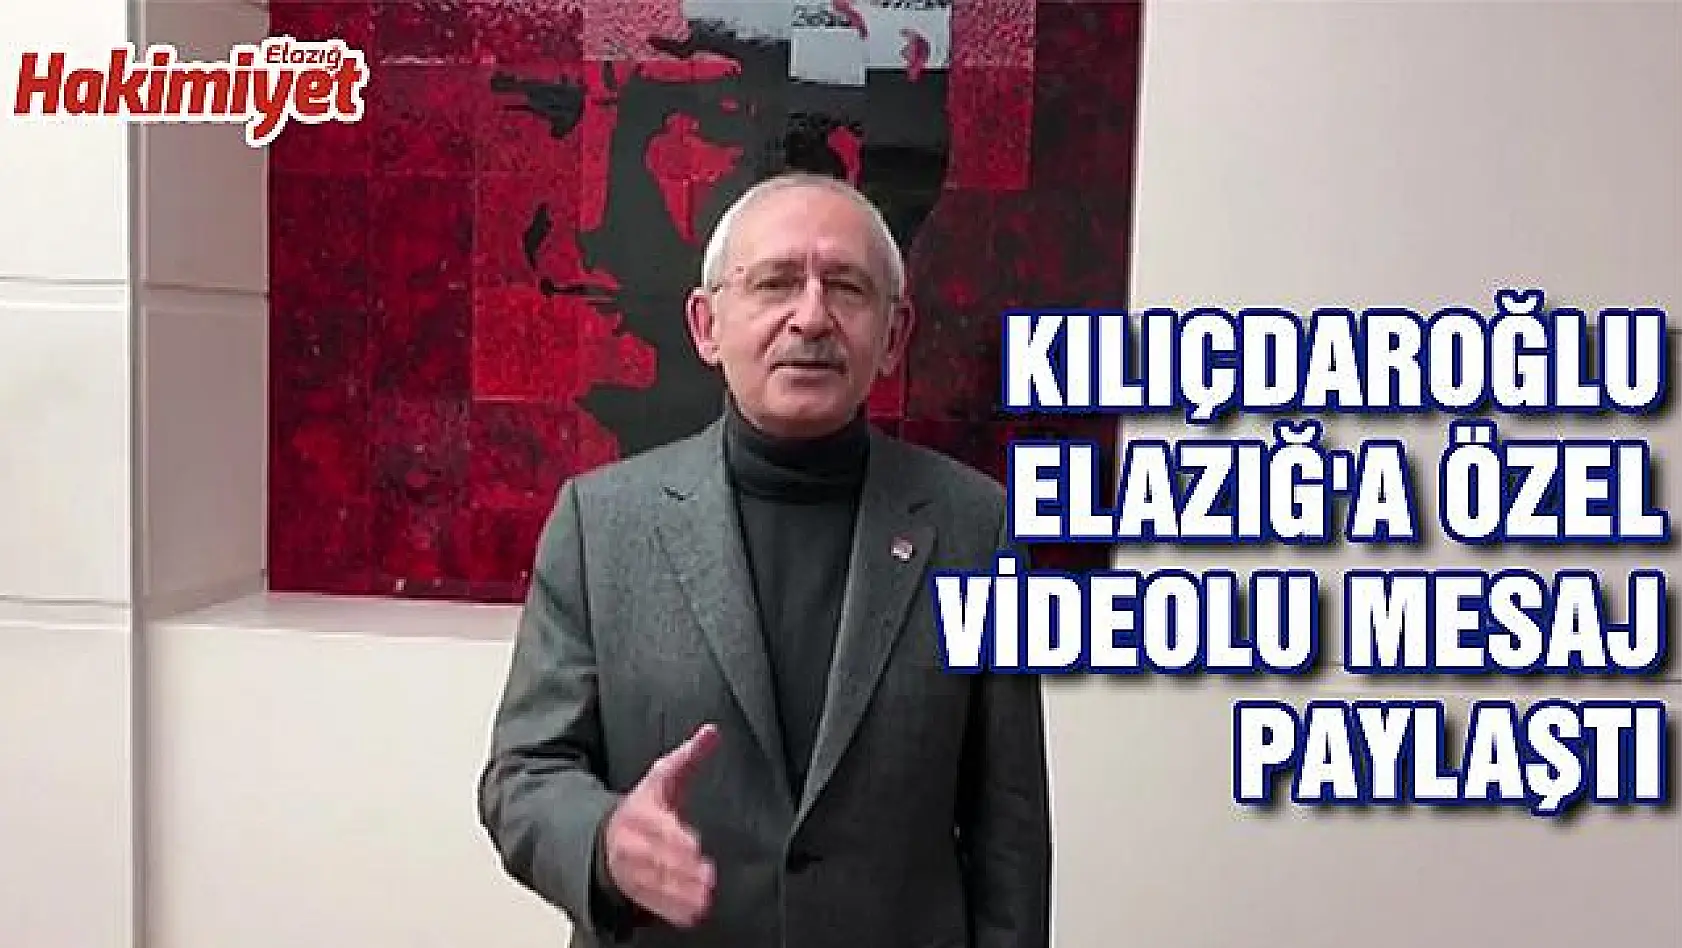 Kılıçdaroğlu Elazığ'a özel videolu mesaj paylaştı